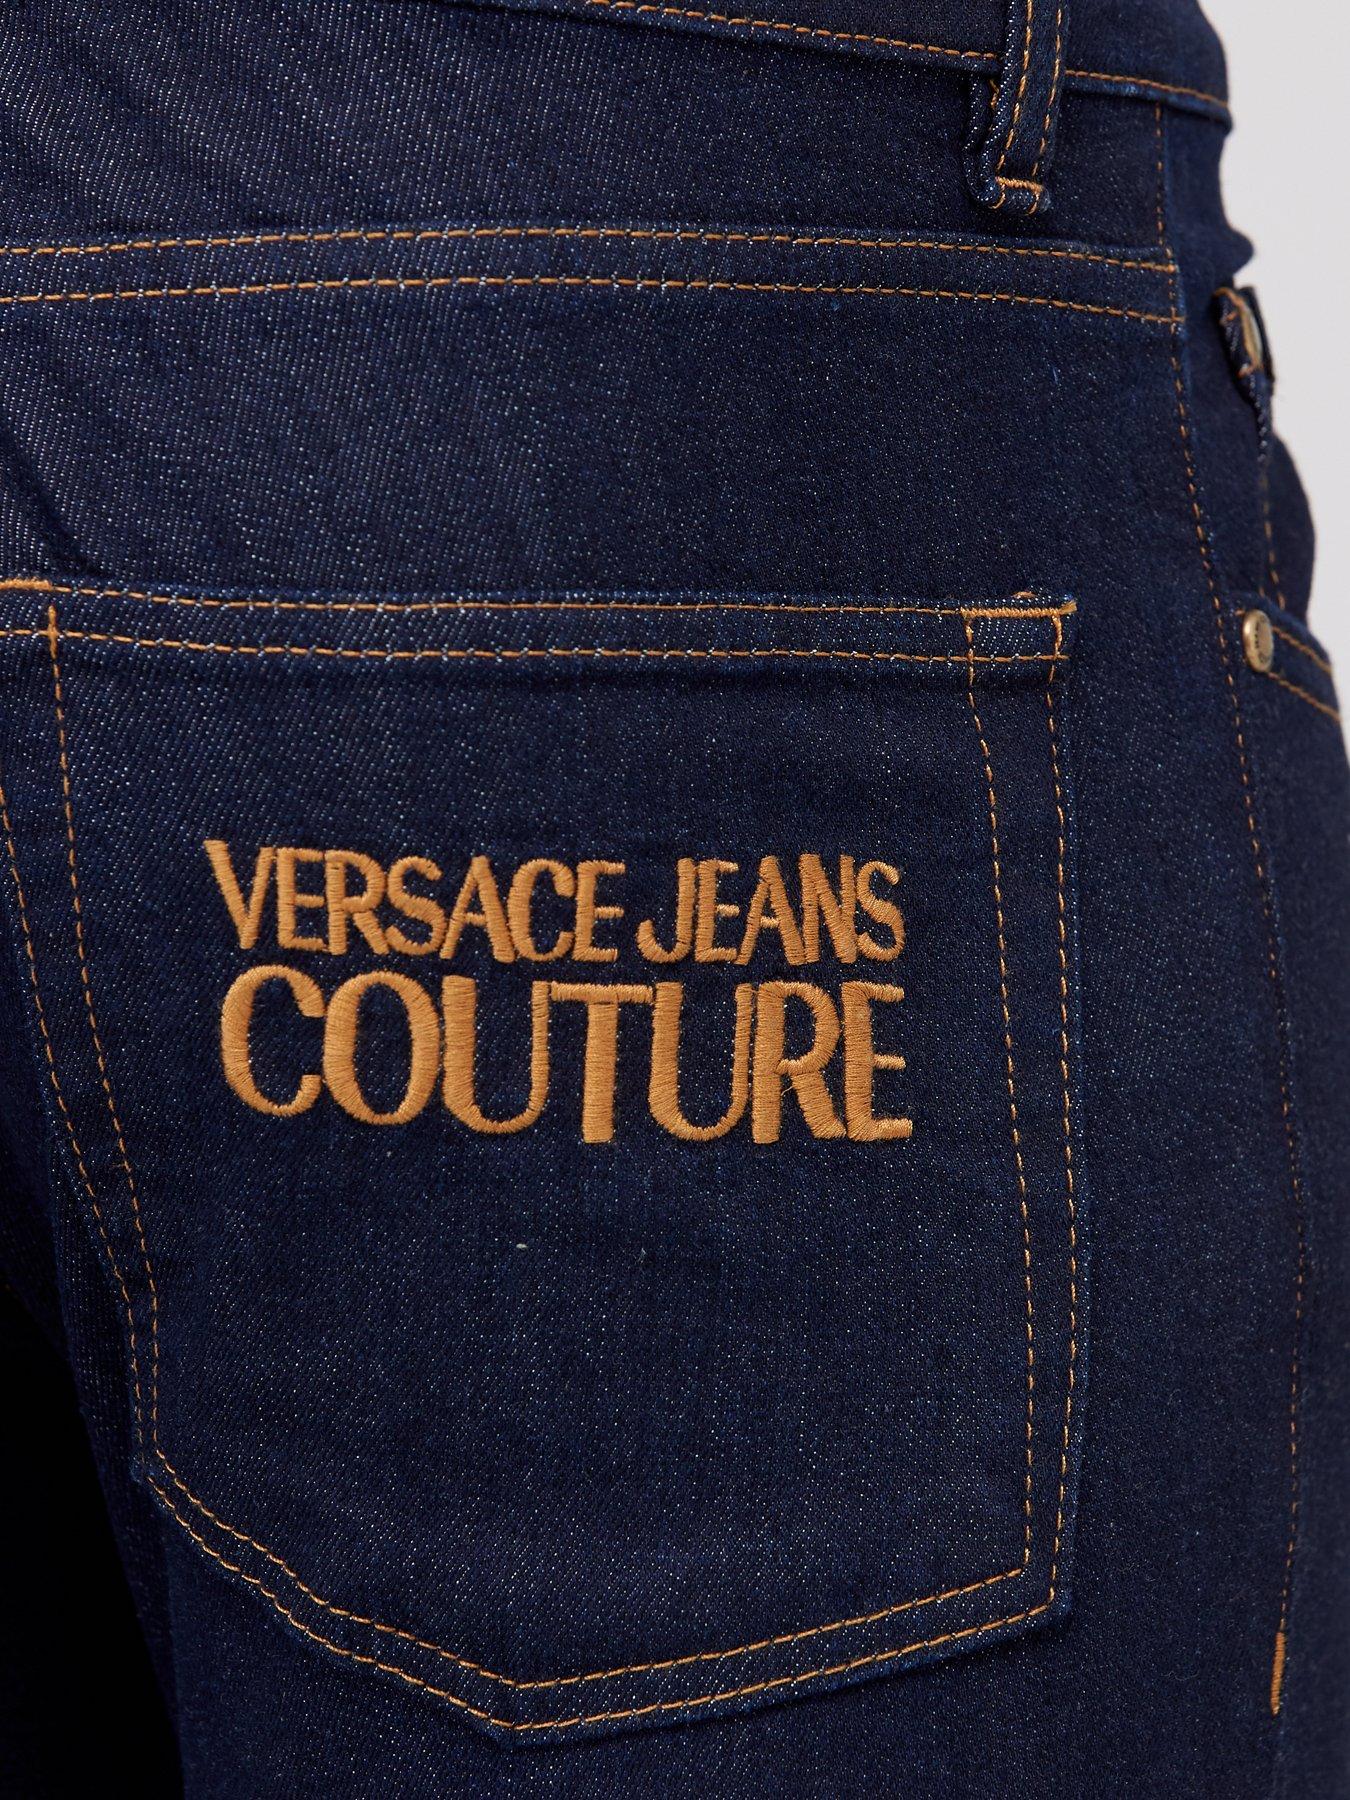 versace skinny jeans mens